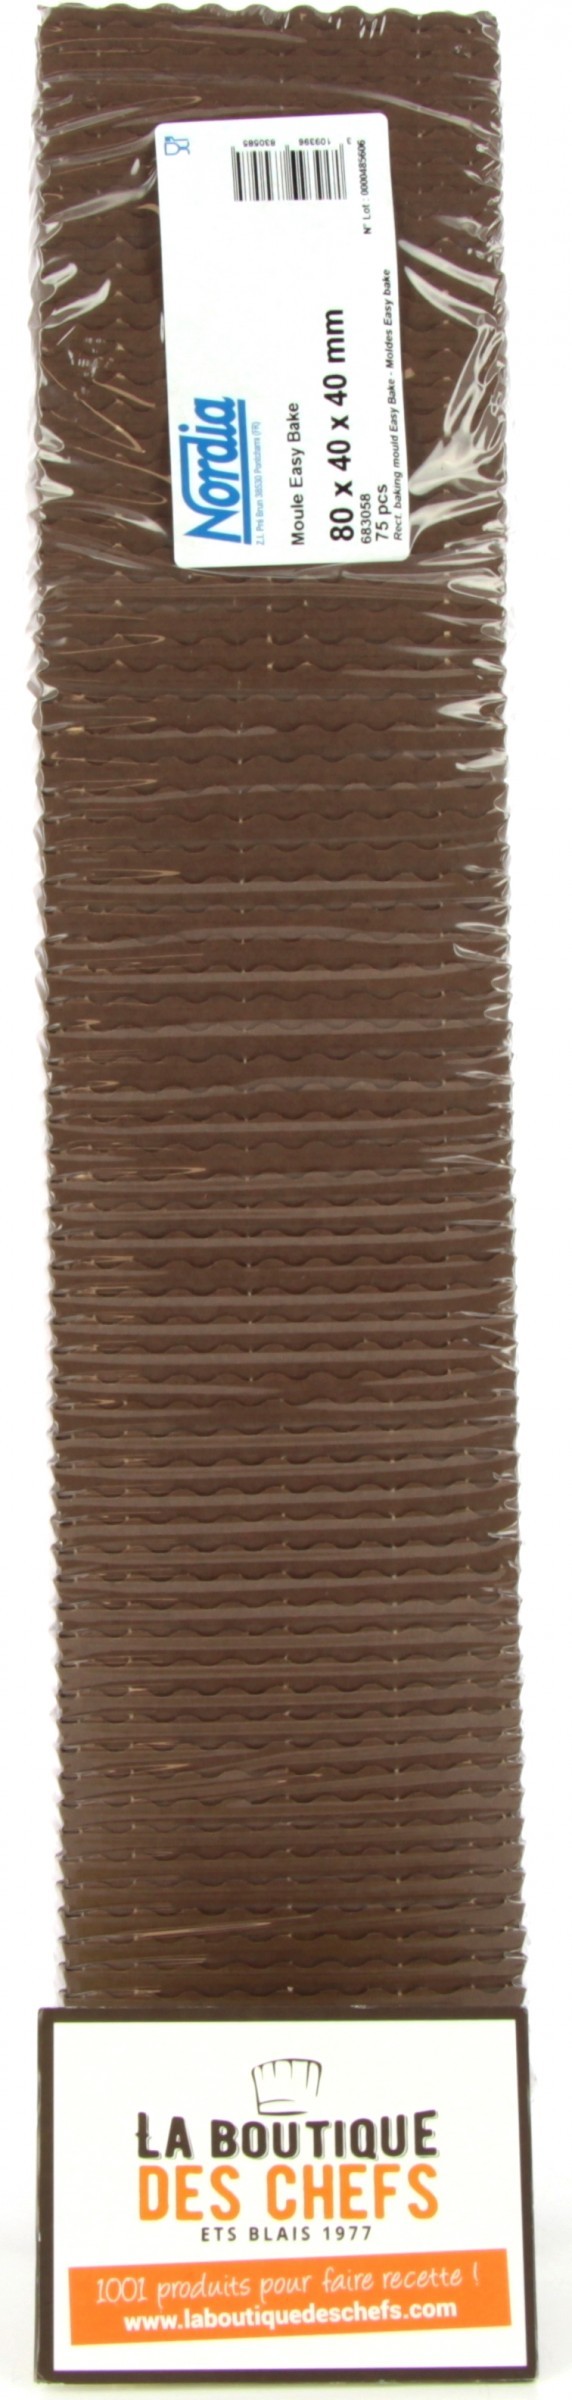 Moule à gâteau rectangulaire jetable carton 10 x 8 cm (x60) - Nordia